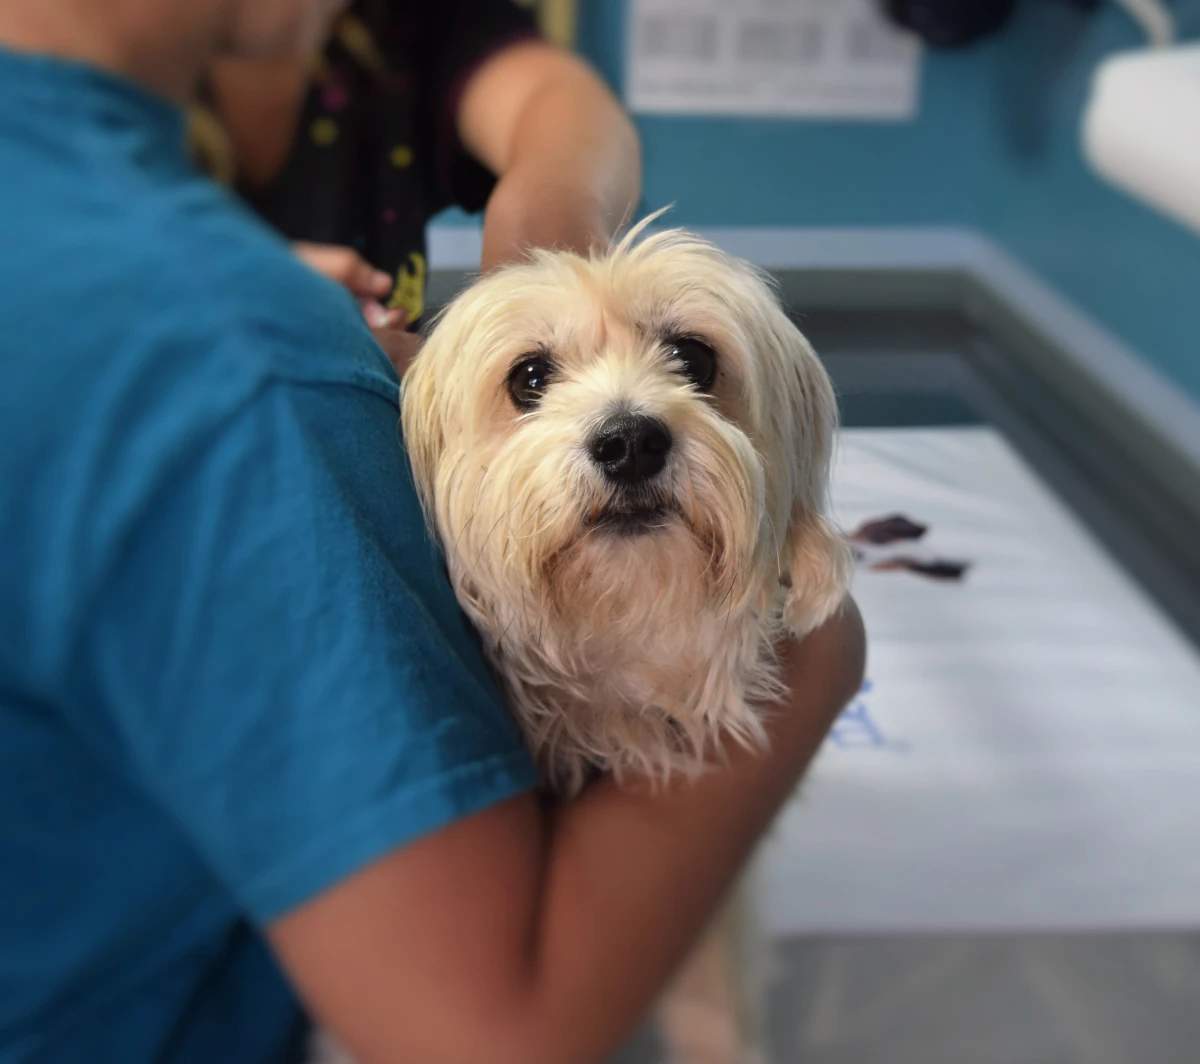 dog during a vet visit